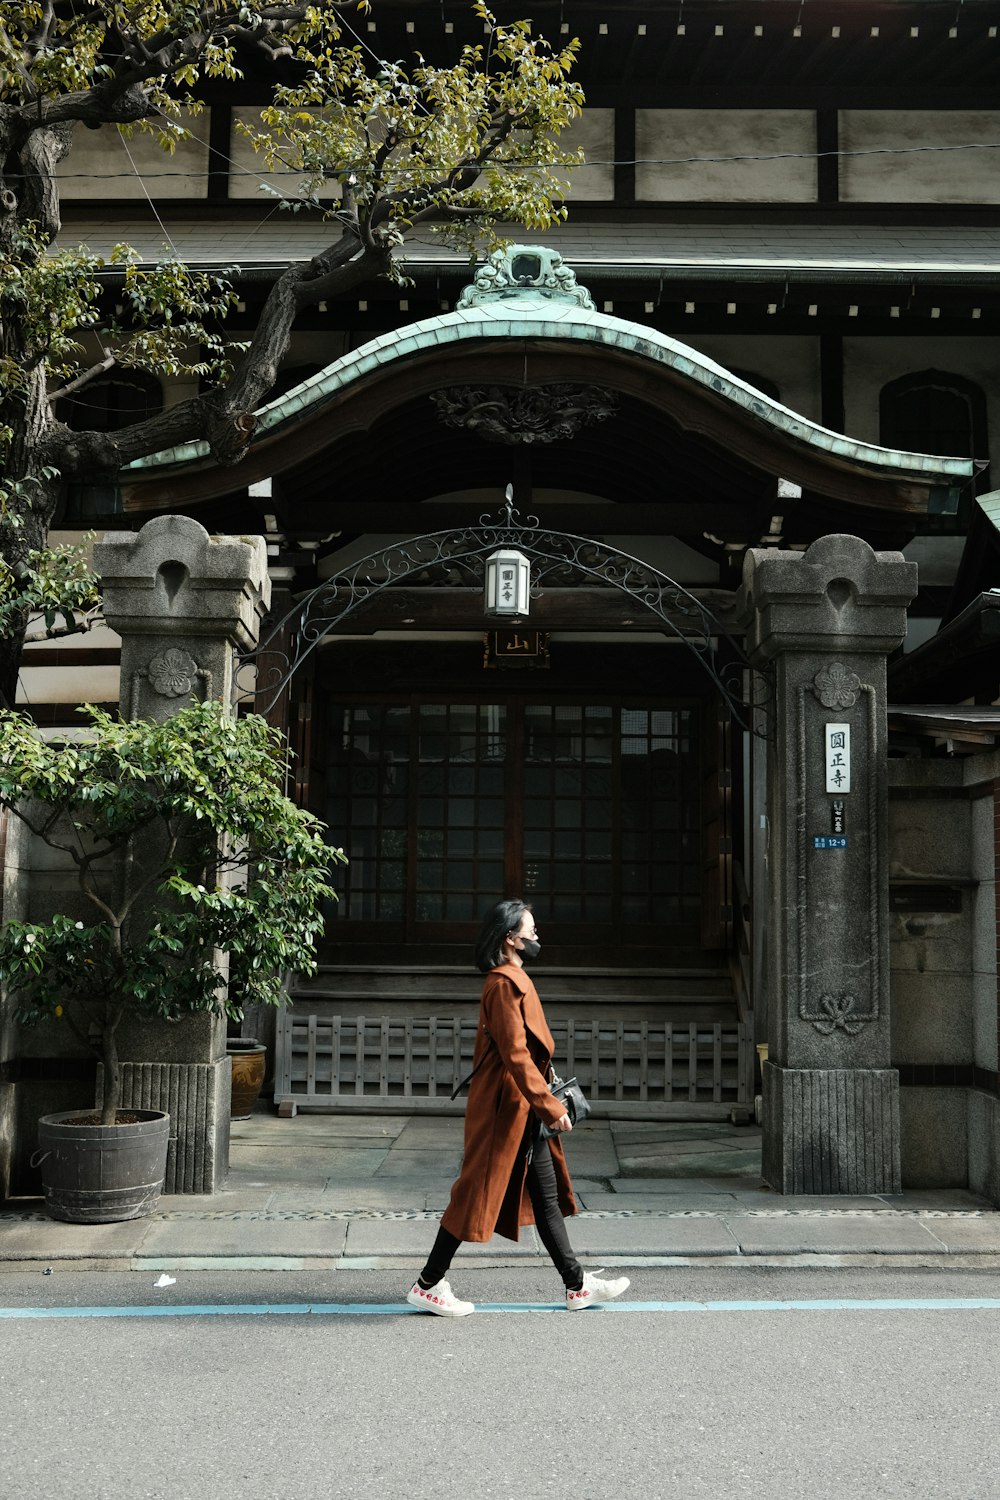 Una mujer caminando por una calle frente a un edificio